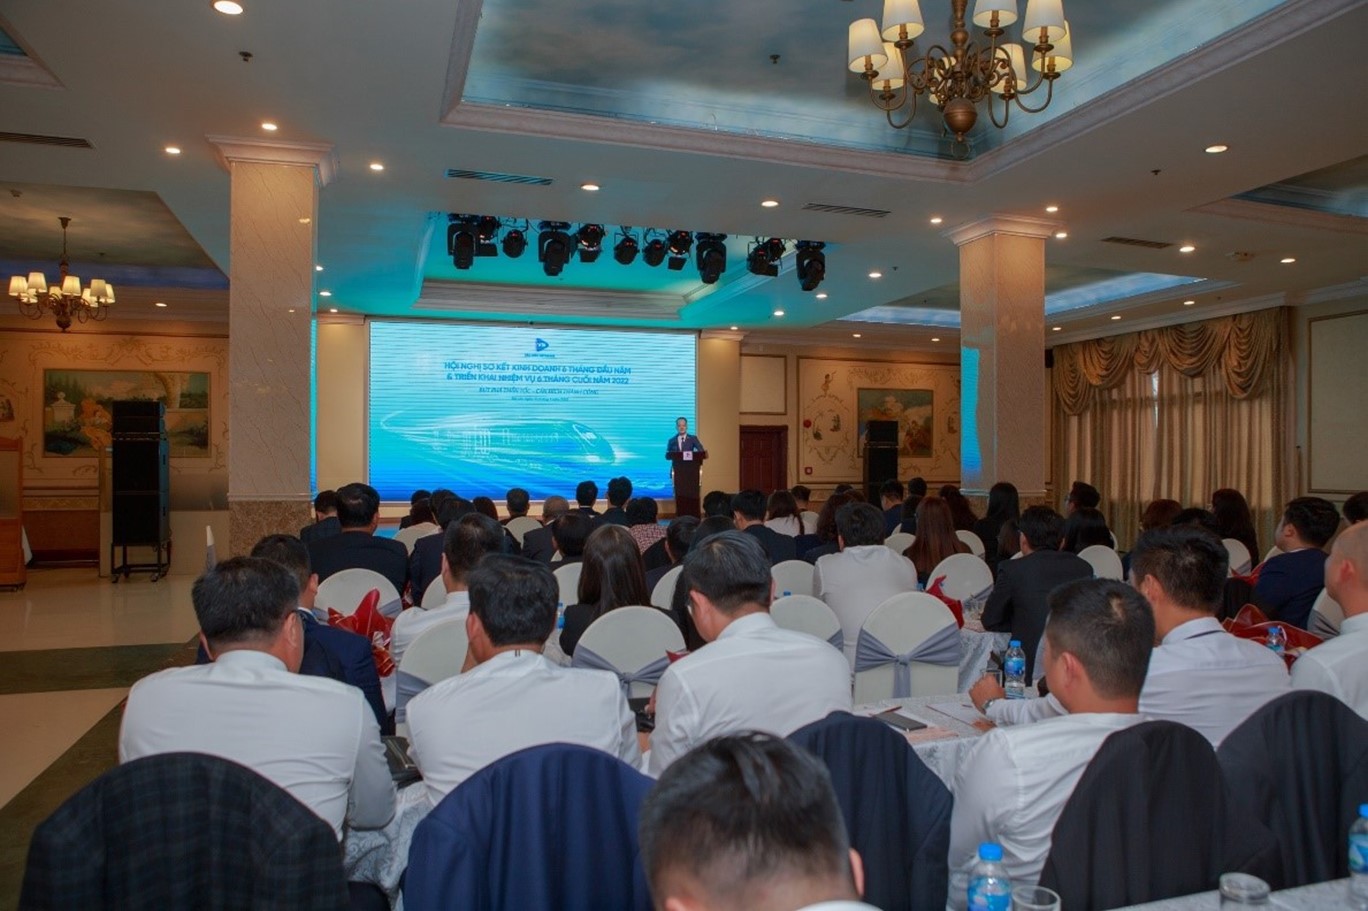 Bảo hiểm VietinBank - VBI tổ chức Hội nghị Sơ kết hoạt động 6 tháng đầu năm và triển khai nhiệm vụ 6 tháng cuối năm 2022 với chủ đề “BỨT PHÁ THẦN TỐC - CÁN ĐÍCH THÀNH CÔNG”